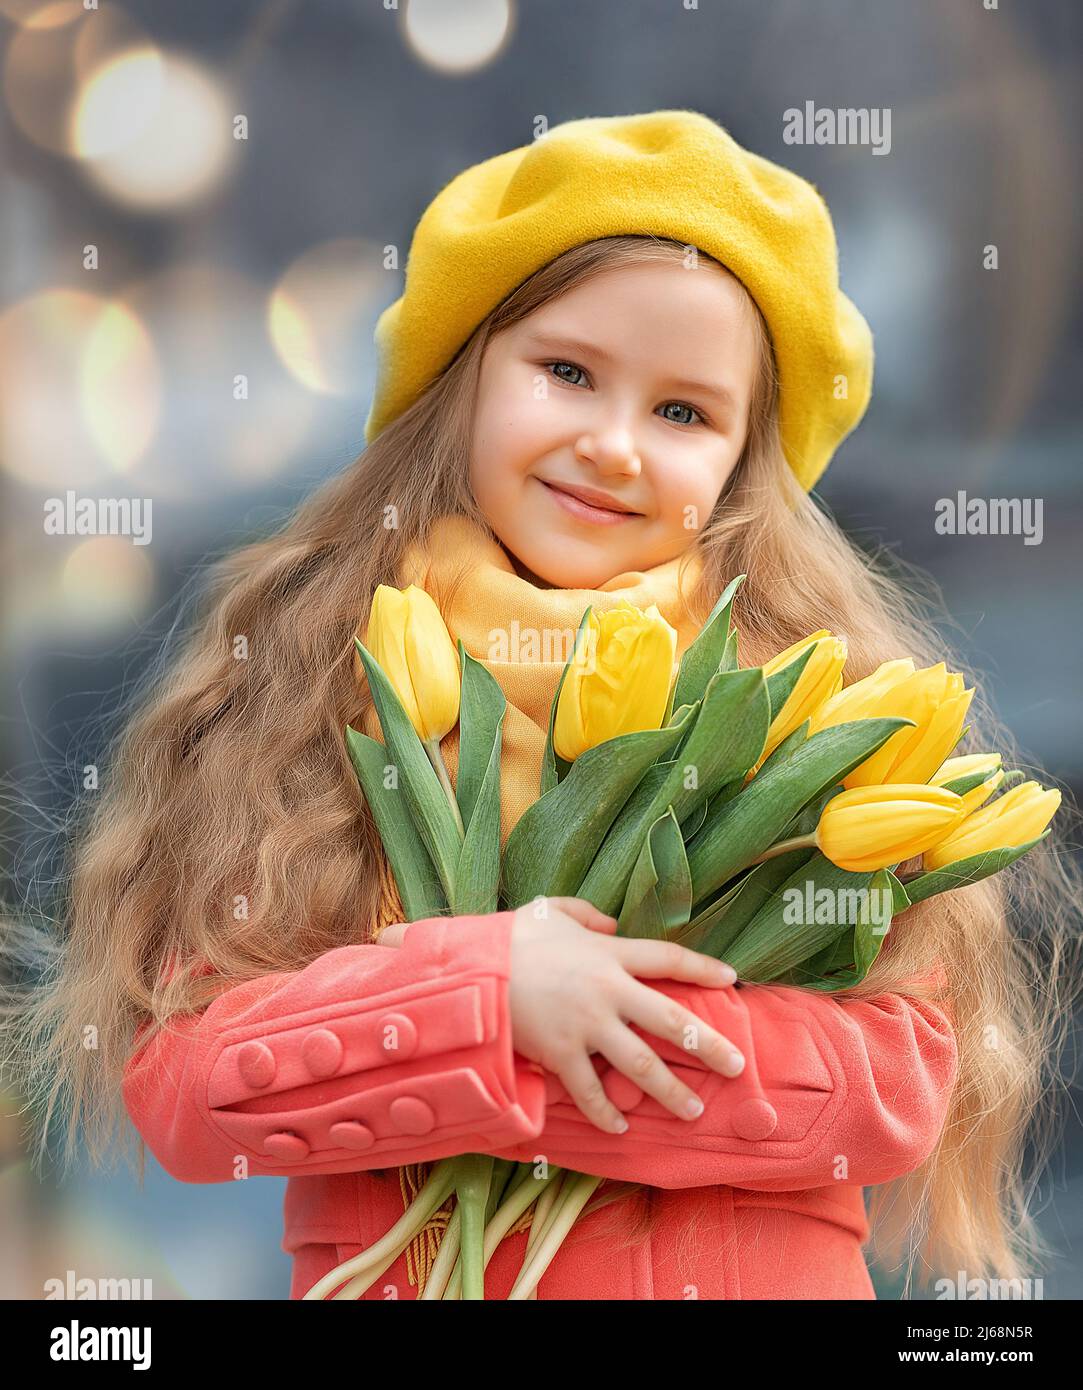 Porträt eines glücklichen Mädchens mit einem Strauß gelber Tulpen auf einem Spaziergang im Frühjahr. Blumen zum Internationalen Frauentag. Stockfoto